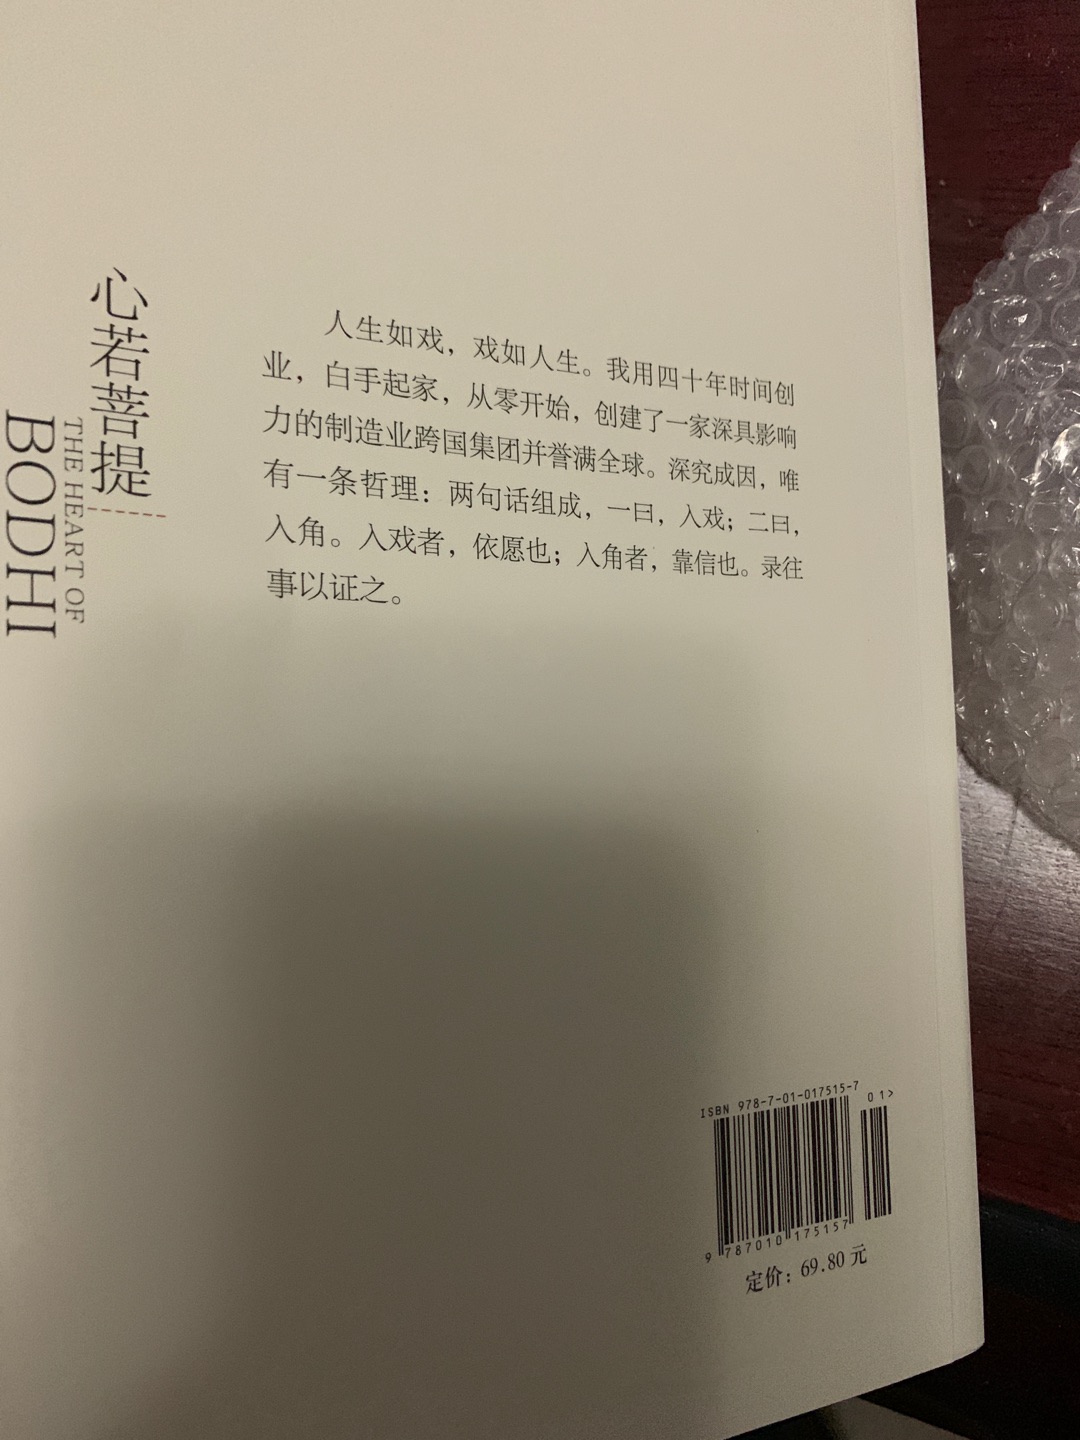 曹德旺，中国良心企业家，做人朴实无华，向曹董致敬，乘着便宜多囤点书